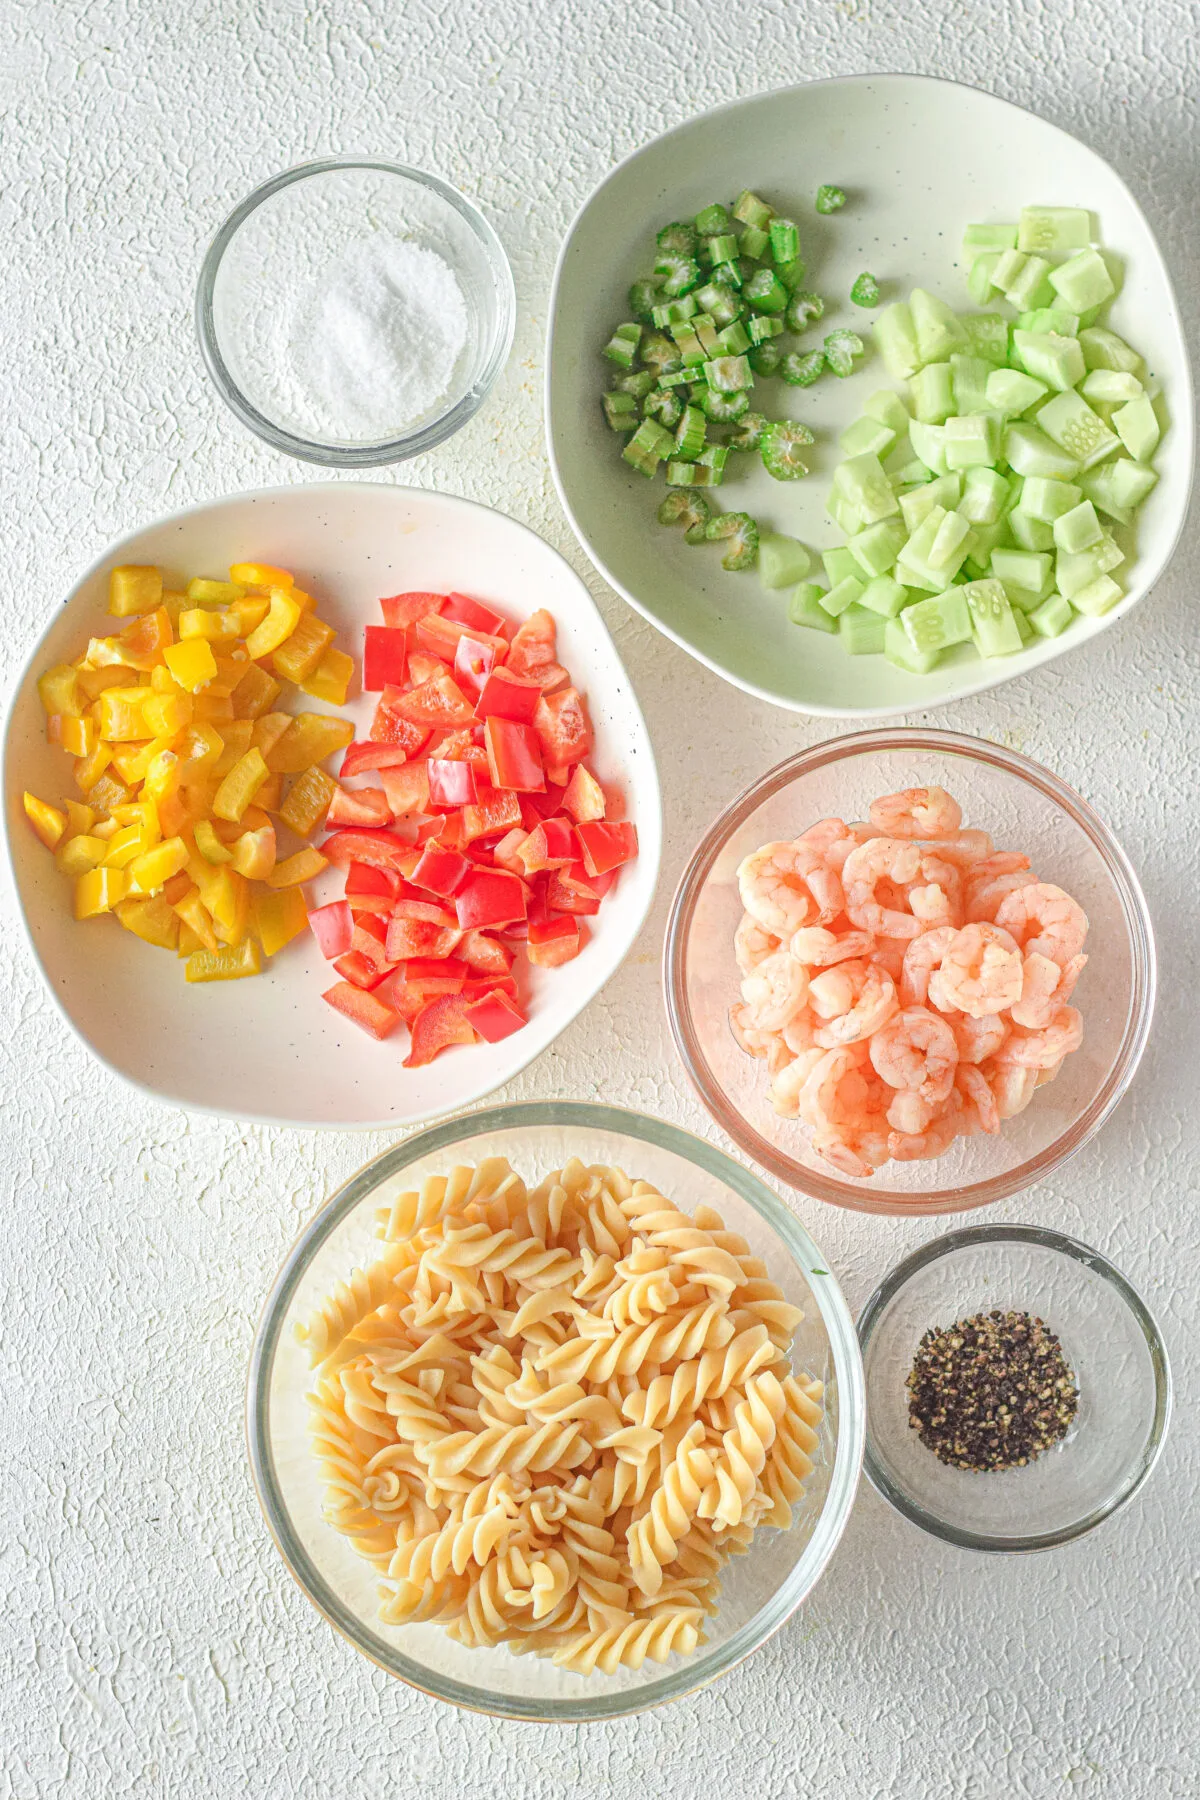 Ingredients for this shrimp pasta salad recipe